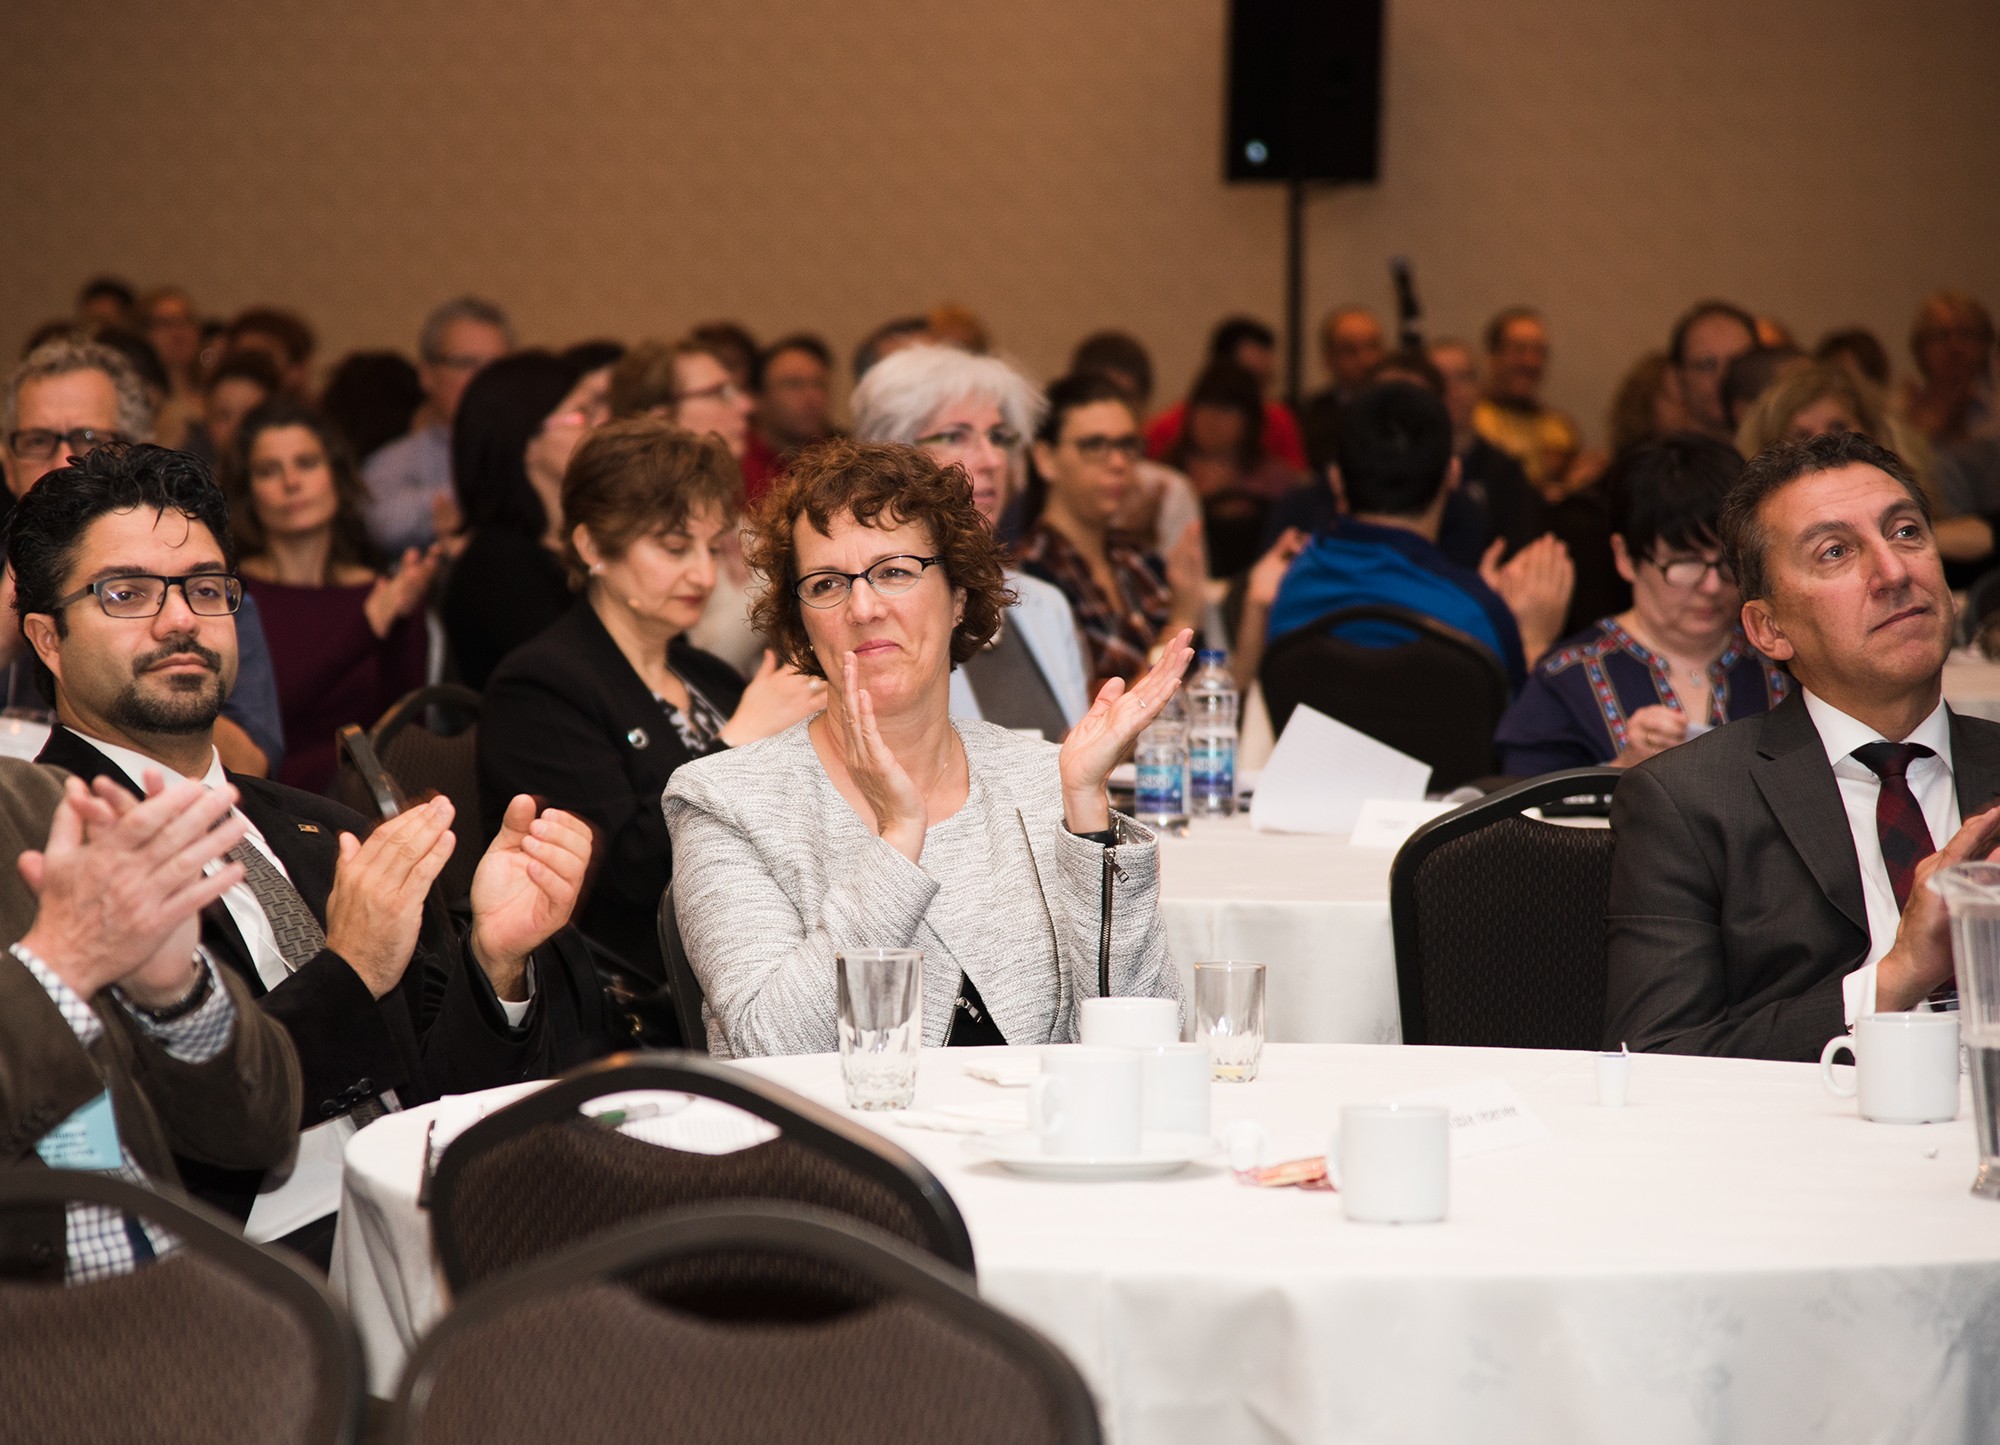 Photographie de l’audience durant une conférence de spécialistes de la santé / Ordre professionnel de la physiothérapie du Québec